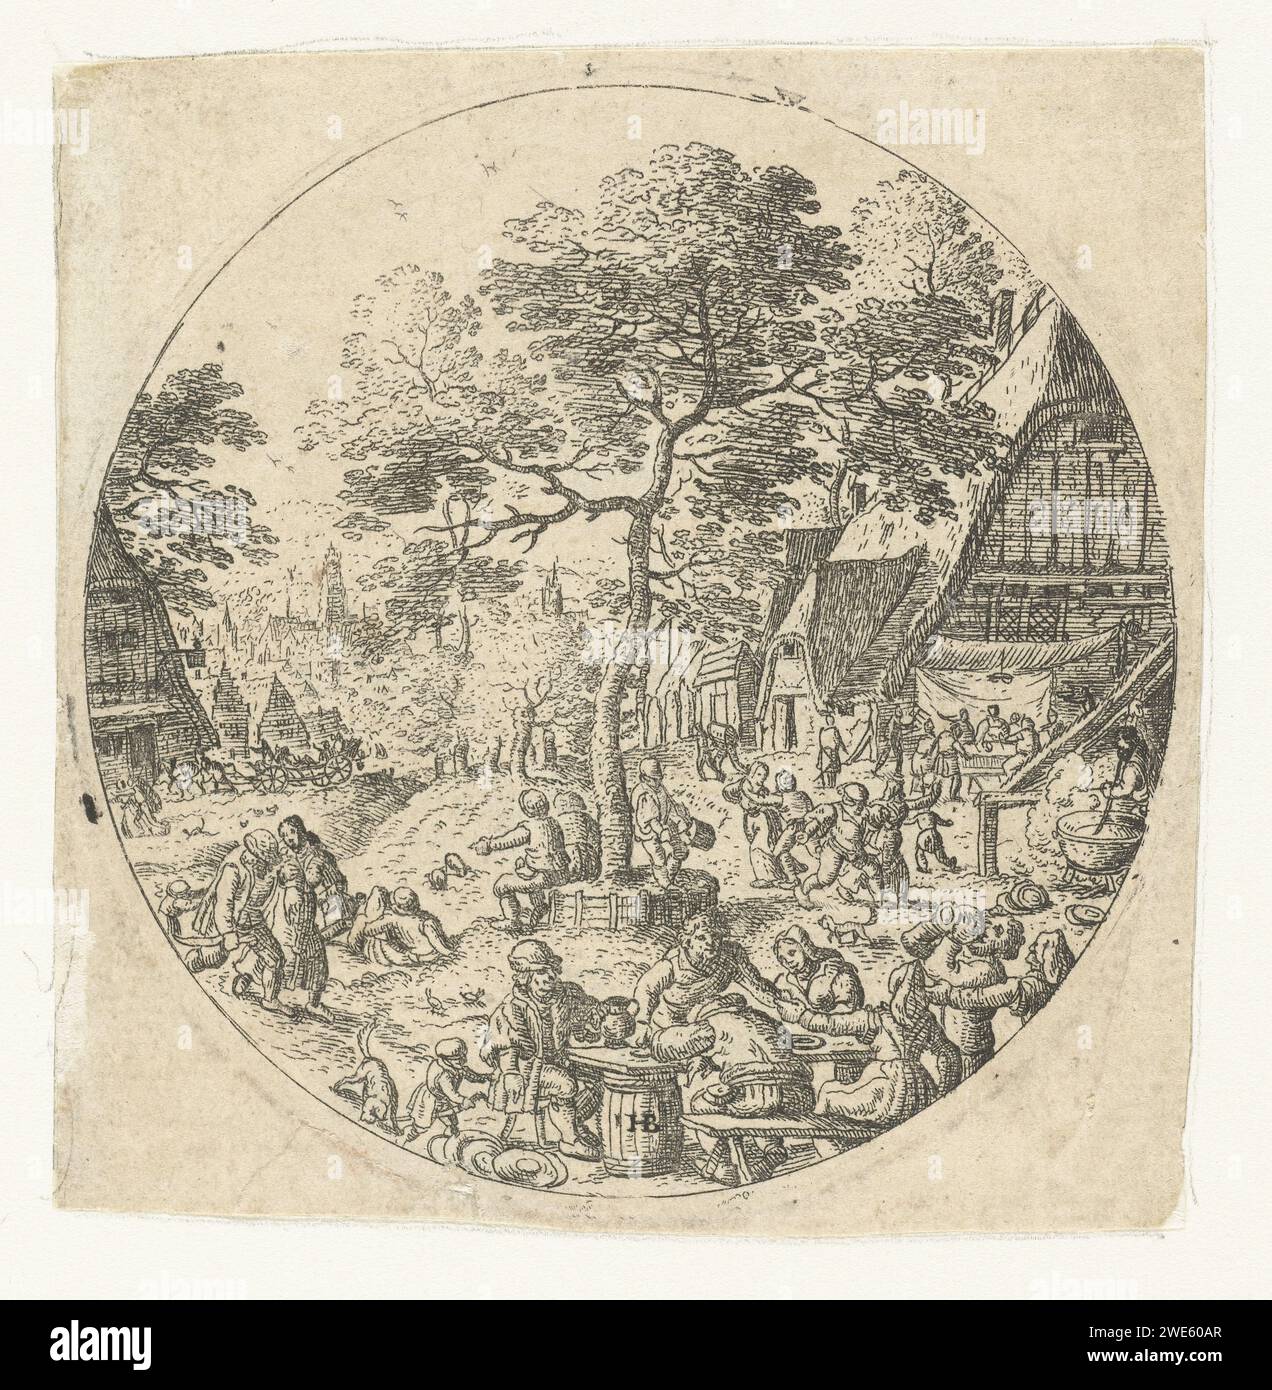 Boerenfeest, Hans Bol, ca. 1550 - 1593 Print Eine Party findet auf dem Dorpsplein statt. Bauern tanzen und lieben, kochen und essen sind fertig. Im Vordergrund befindet sich ein Tisch aus zwei Fässern mit einem Regal darauf. Es gibt einen Baum in der Mitte des Platzes. Unter dem Baum sind zwei Männer. Papierätzfest Stockfoto